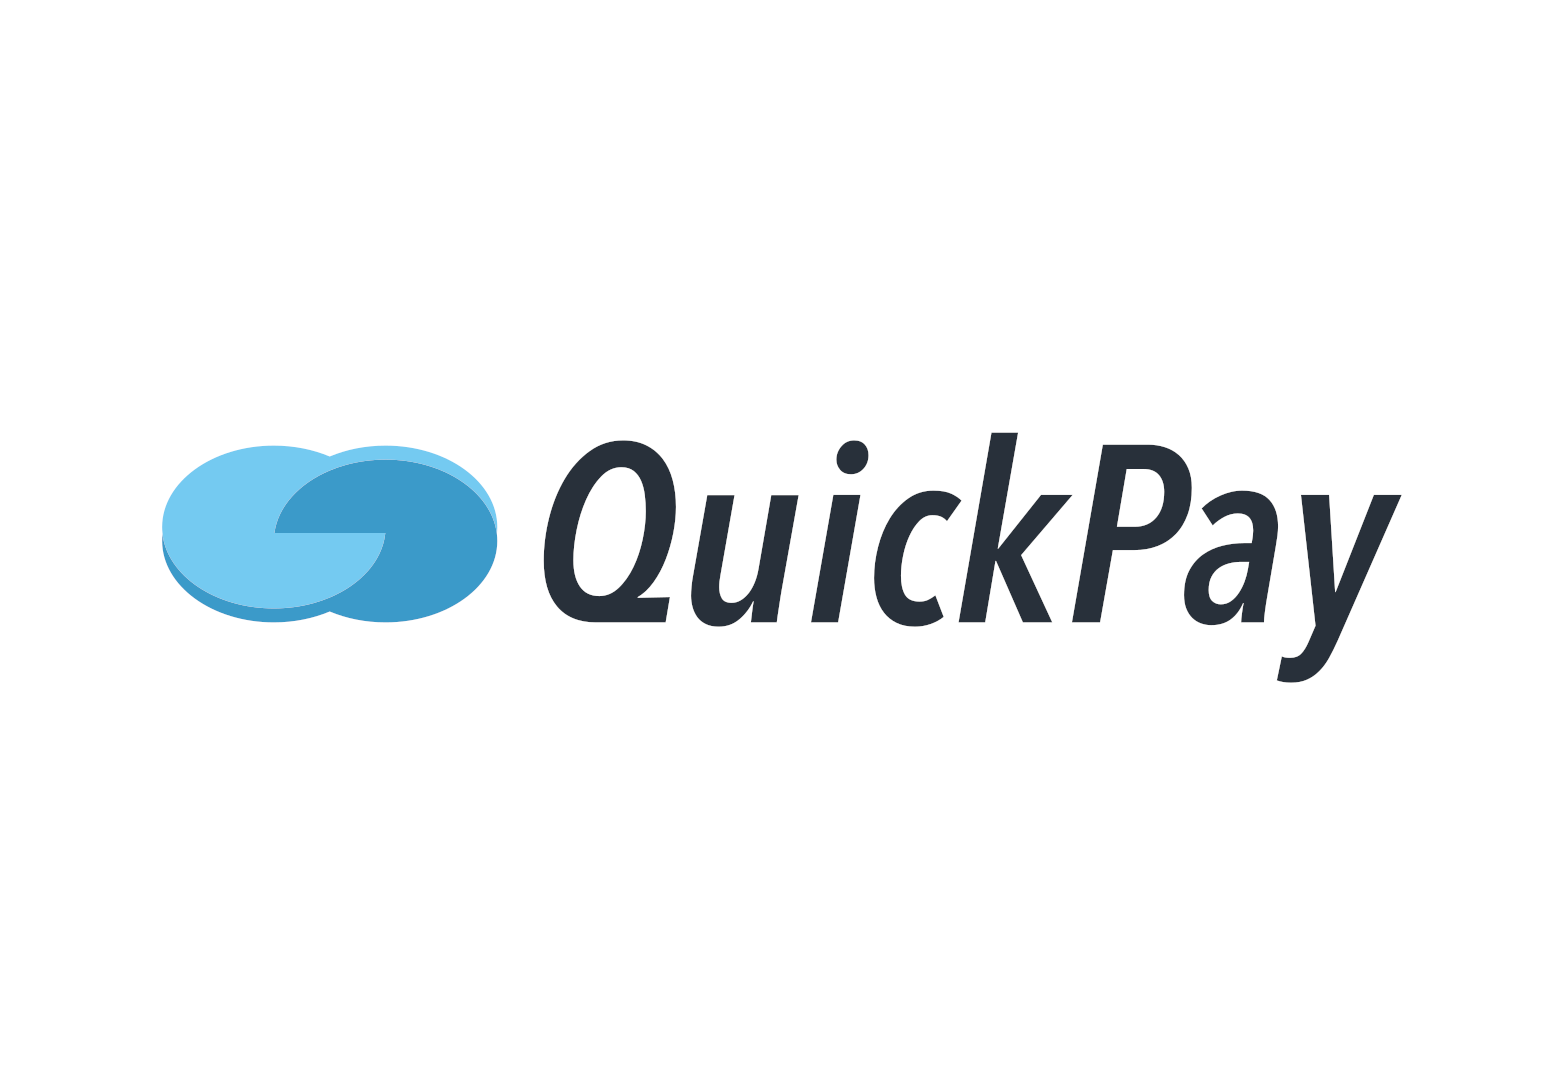 Квикпэй. Quickpay. Quickpay (Квикпэй). Quick pay logo. Quickpay kg PNG.